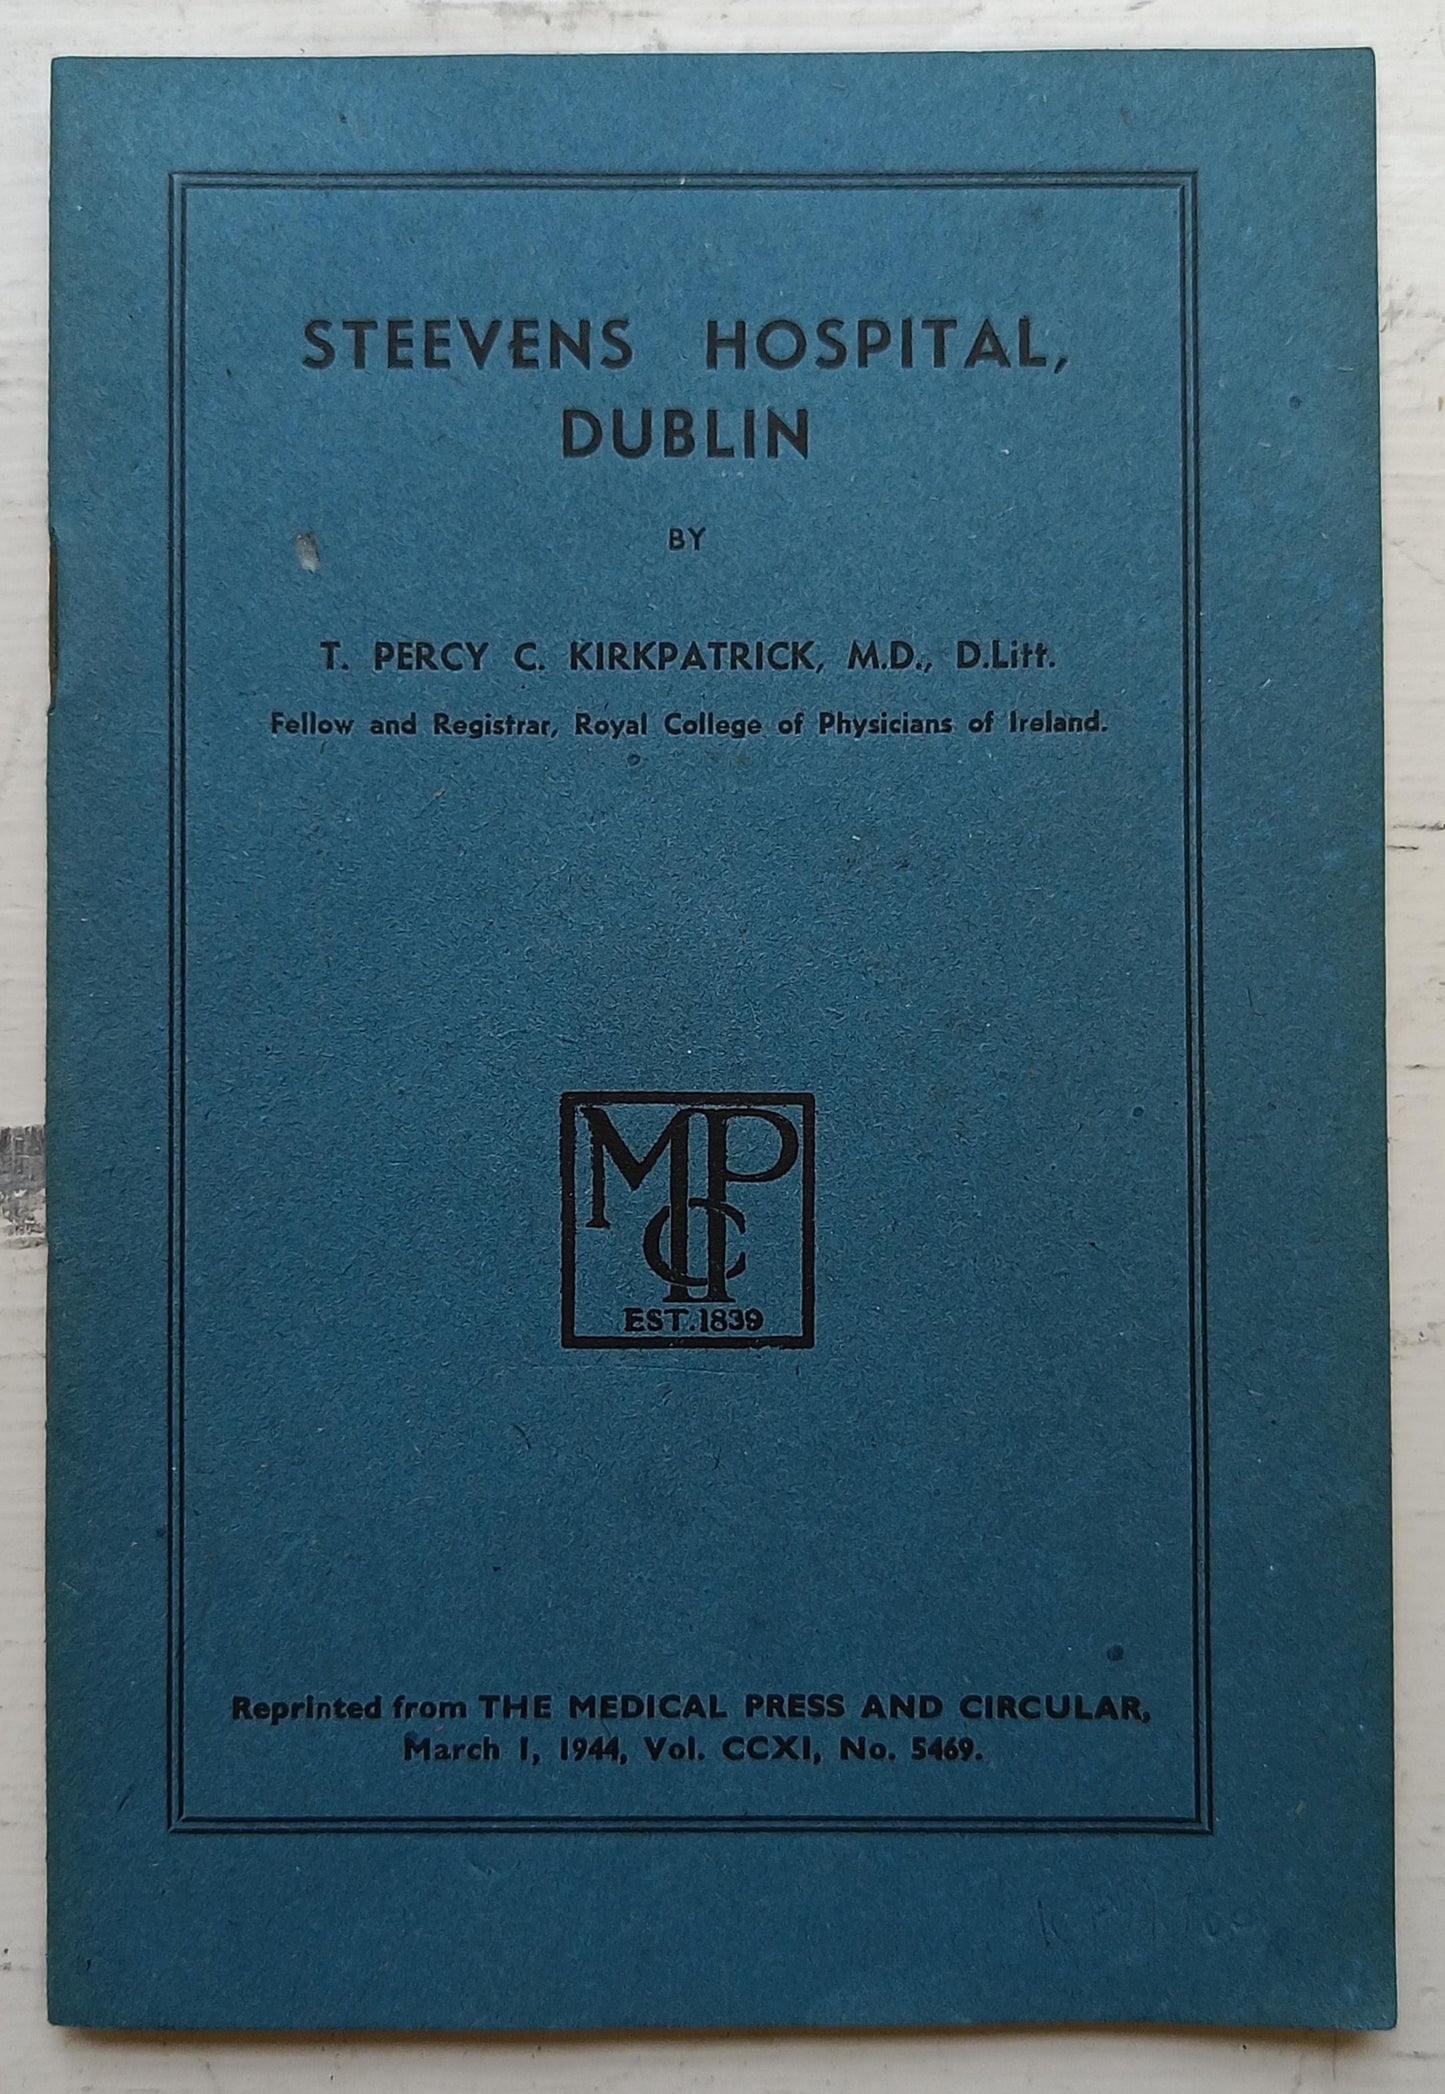 PAMPHLET BUNDLE: Dr Steevens' Hospital texts